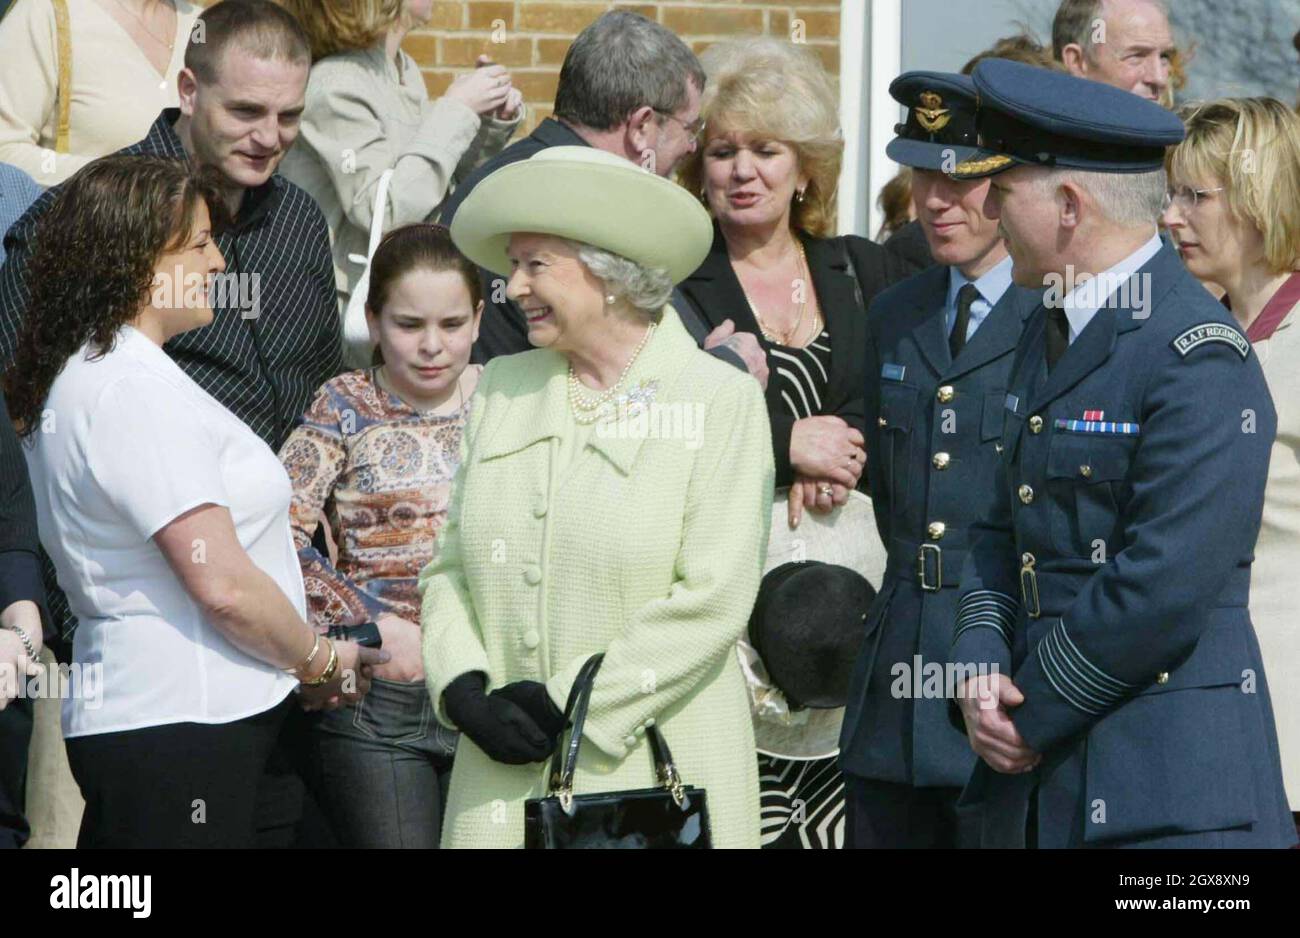 La reine Elizabeth II de Grande-Bretagne lors de sa visite à la base navale de Devonport, Plymouth, le lundi 24 mars 2003.La Reine a rencontré des familles de ceux qui servaient dans le golfe, où elle a bavardé avec des dizaines de femmes, d'enfants, de mères et de pères.Demi-longueur, chapeau, royal, gants, sac à main Â©Anwar Hussein/allaction.co.uk Banque D'Images